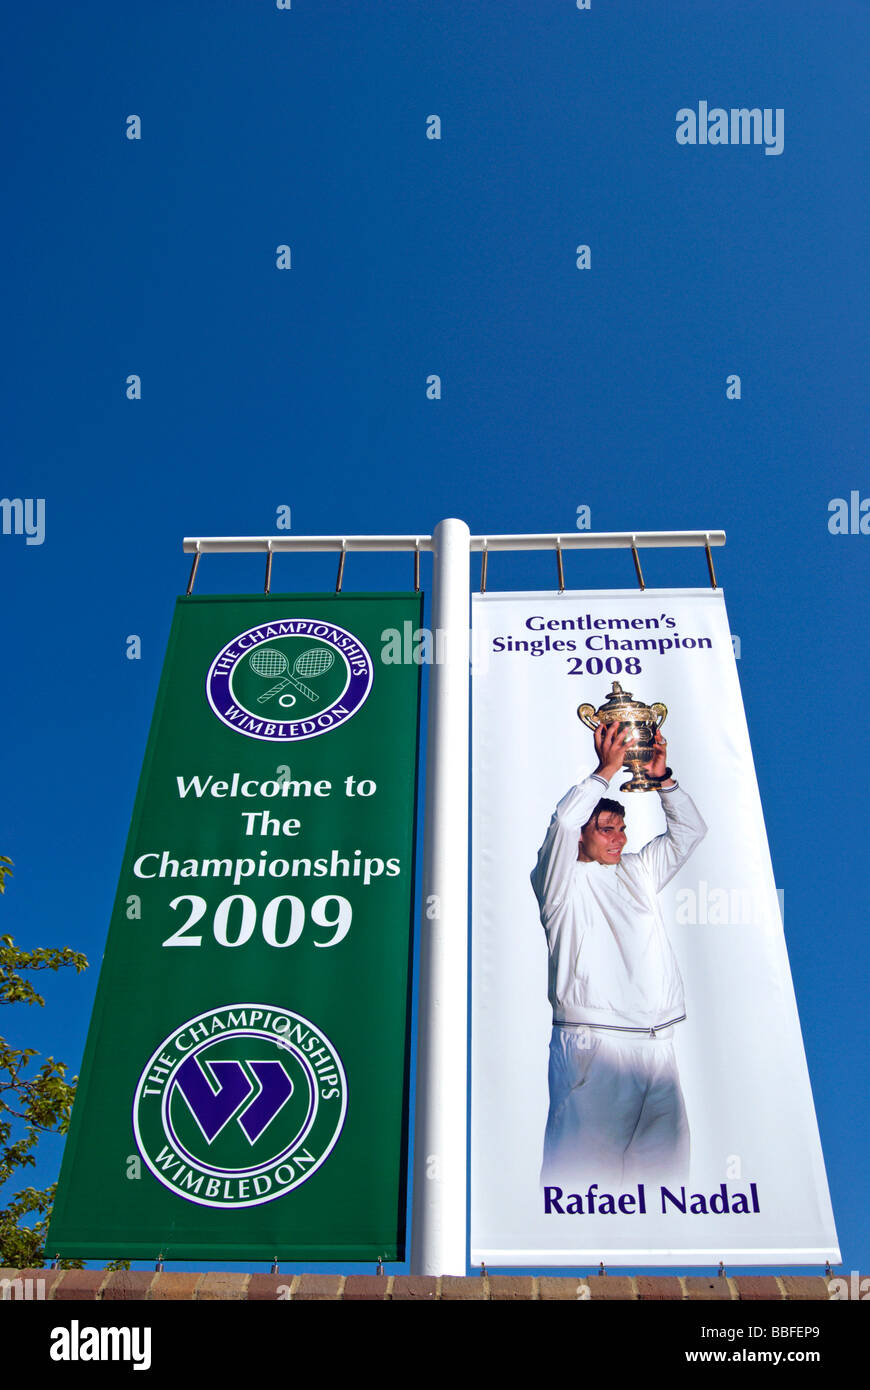 Banner für Wimbledon Tennis Championships 2009 und 2008 Herren Sieger, Rafael Nadal, an der All England Lawn Tennisclub Stockfoto